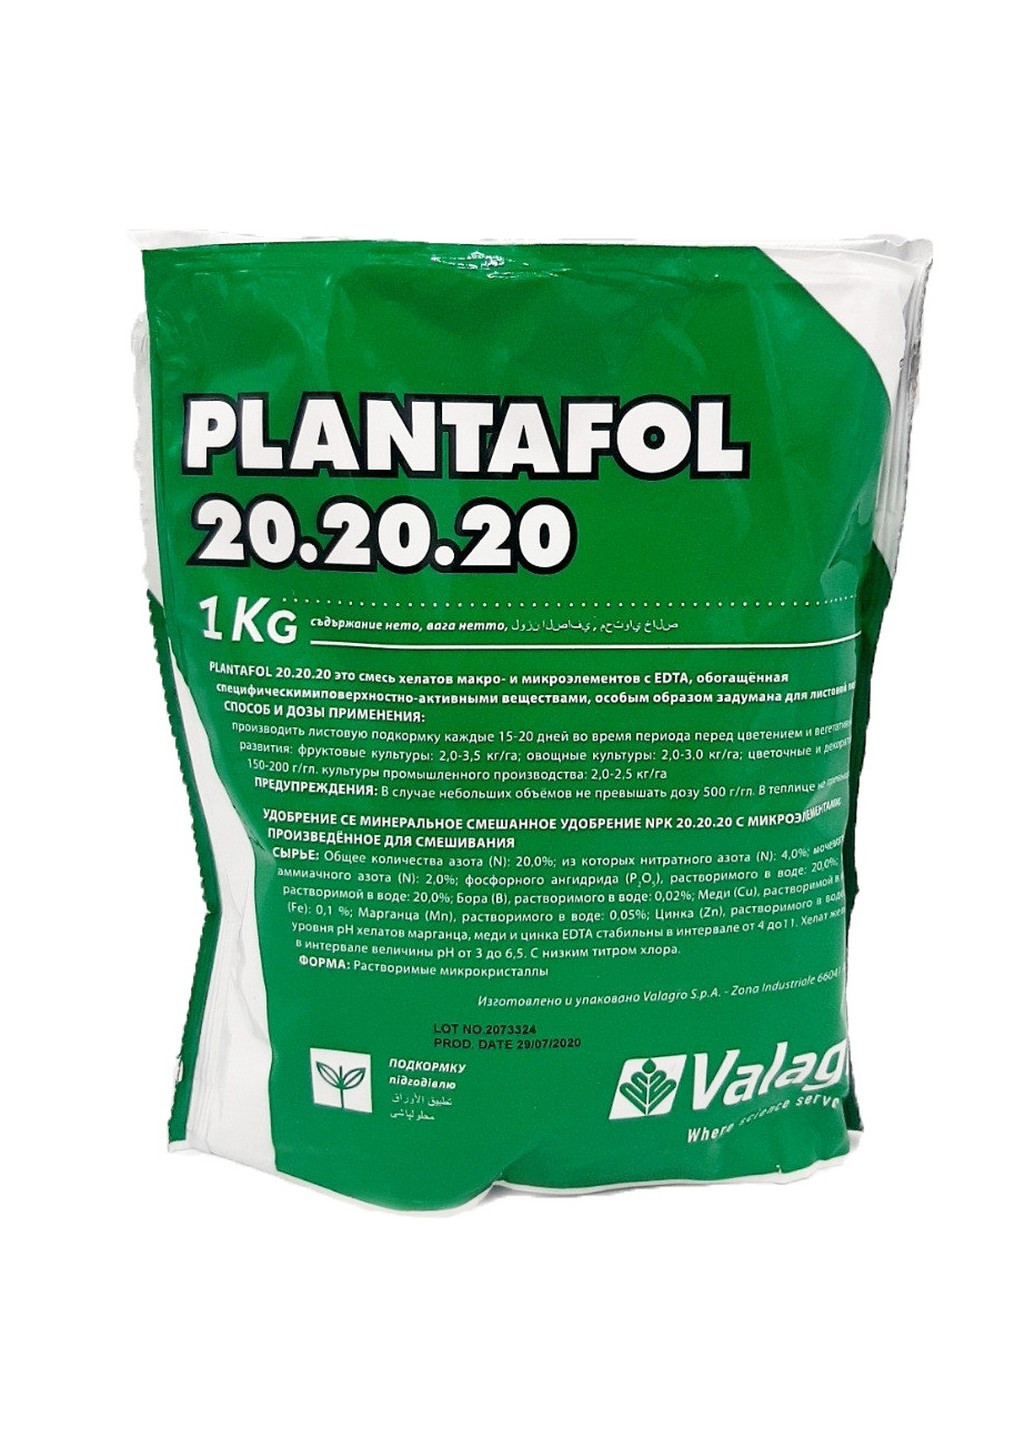 Комплексное удобрение Плантафол (Plantafol) рост плодов 20-20-20 листовая подкормка 1 кг Valagro (230971046)